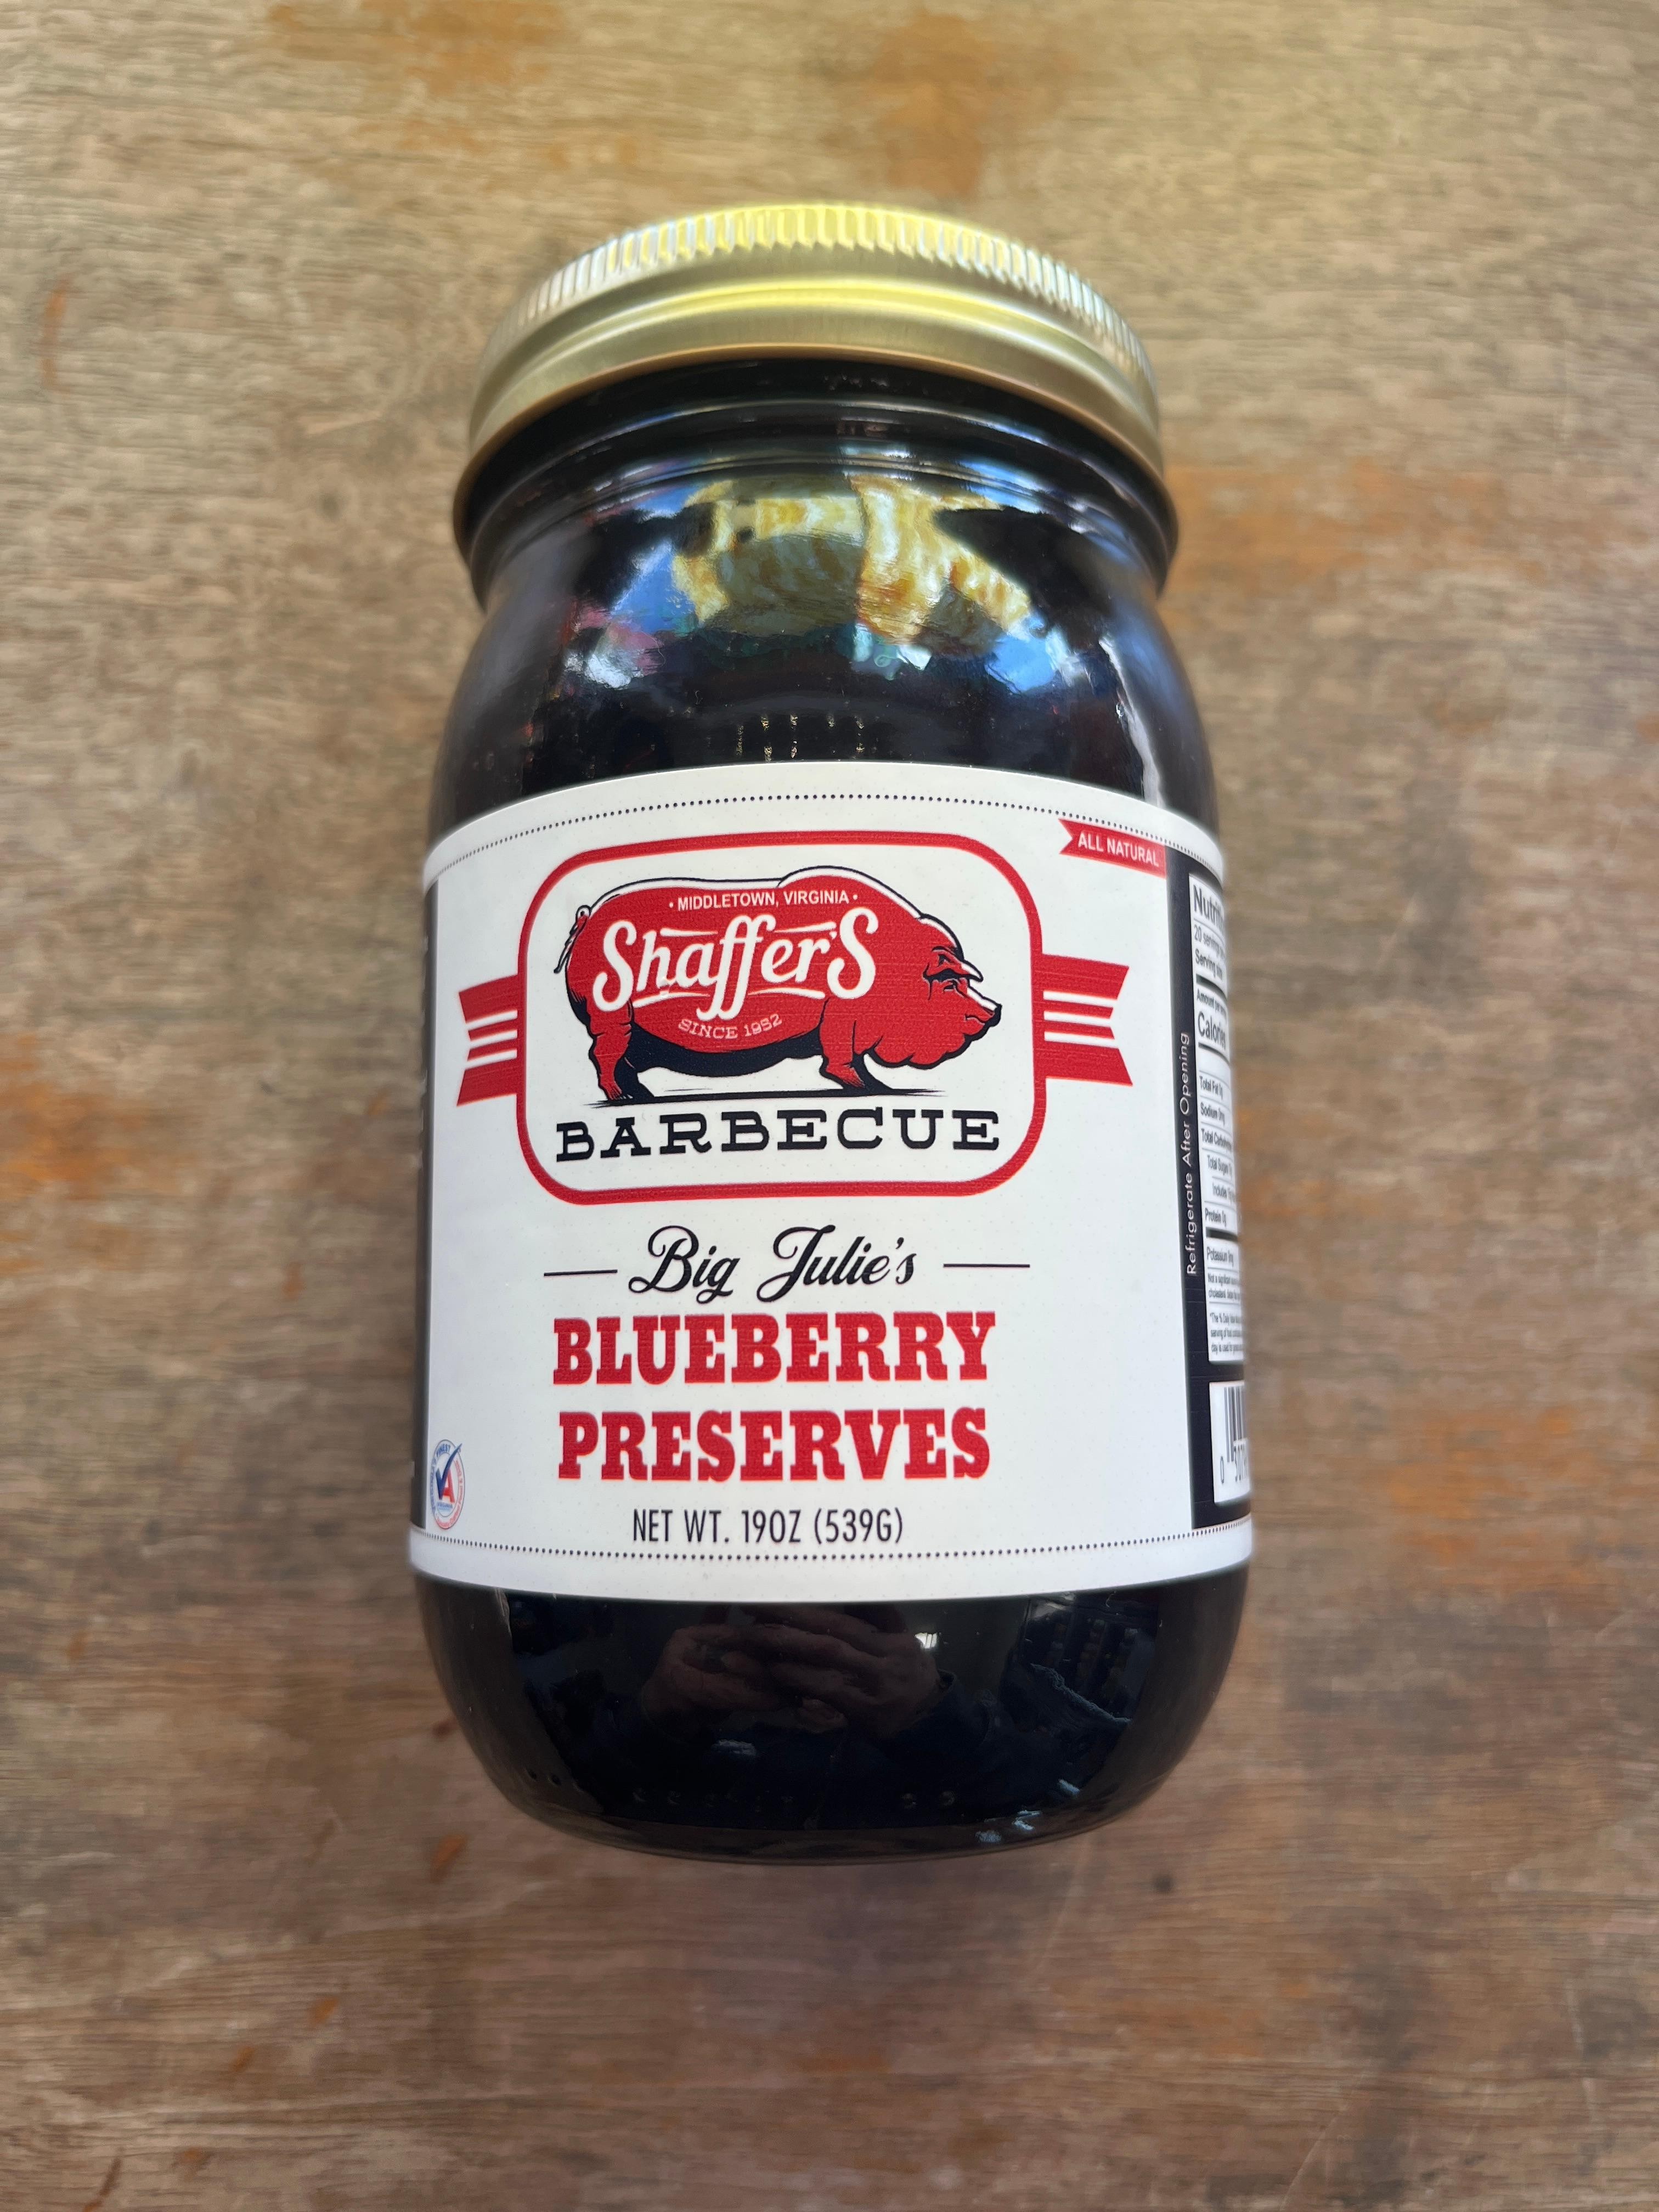 Big Julie's Blueberry Preserves